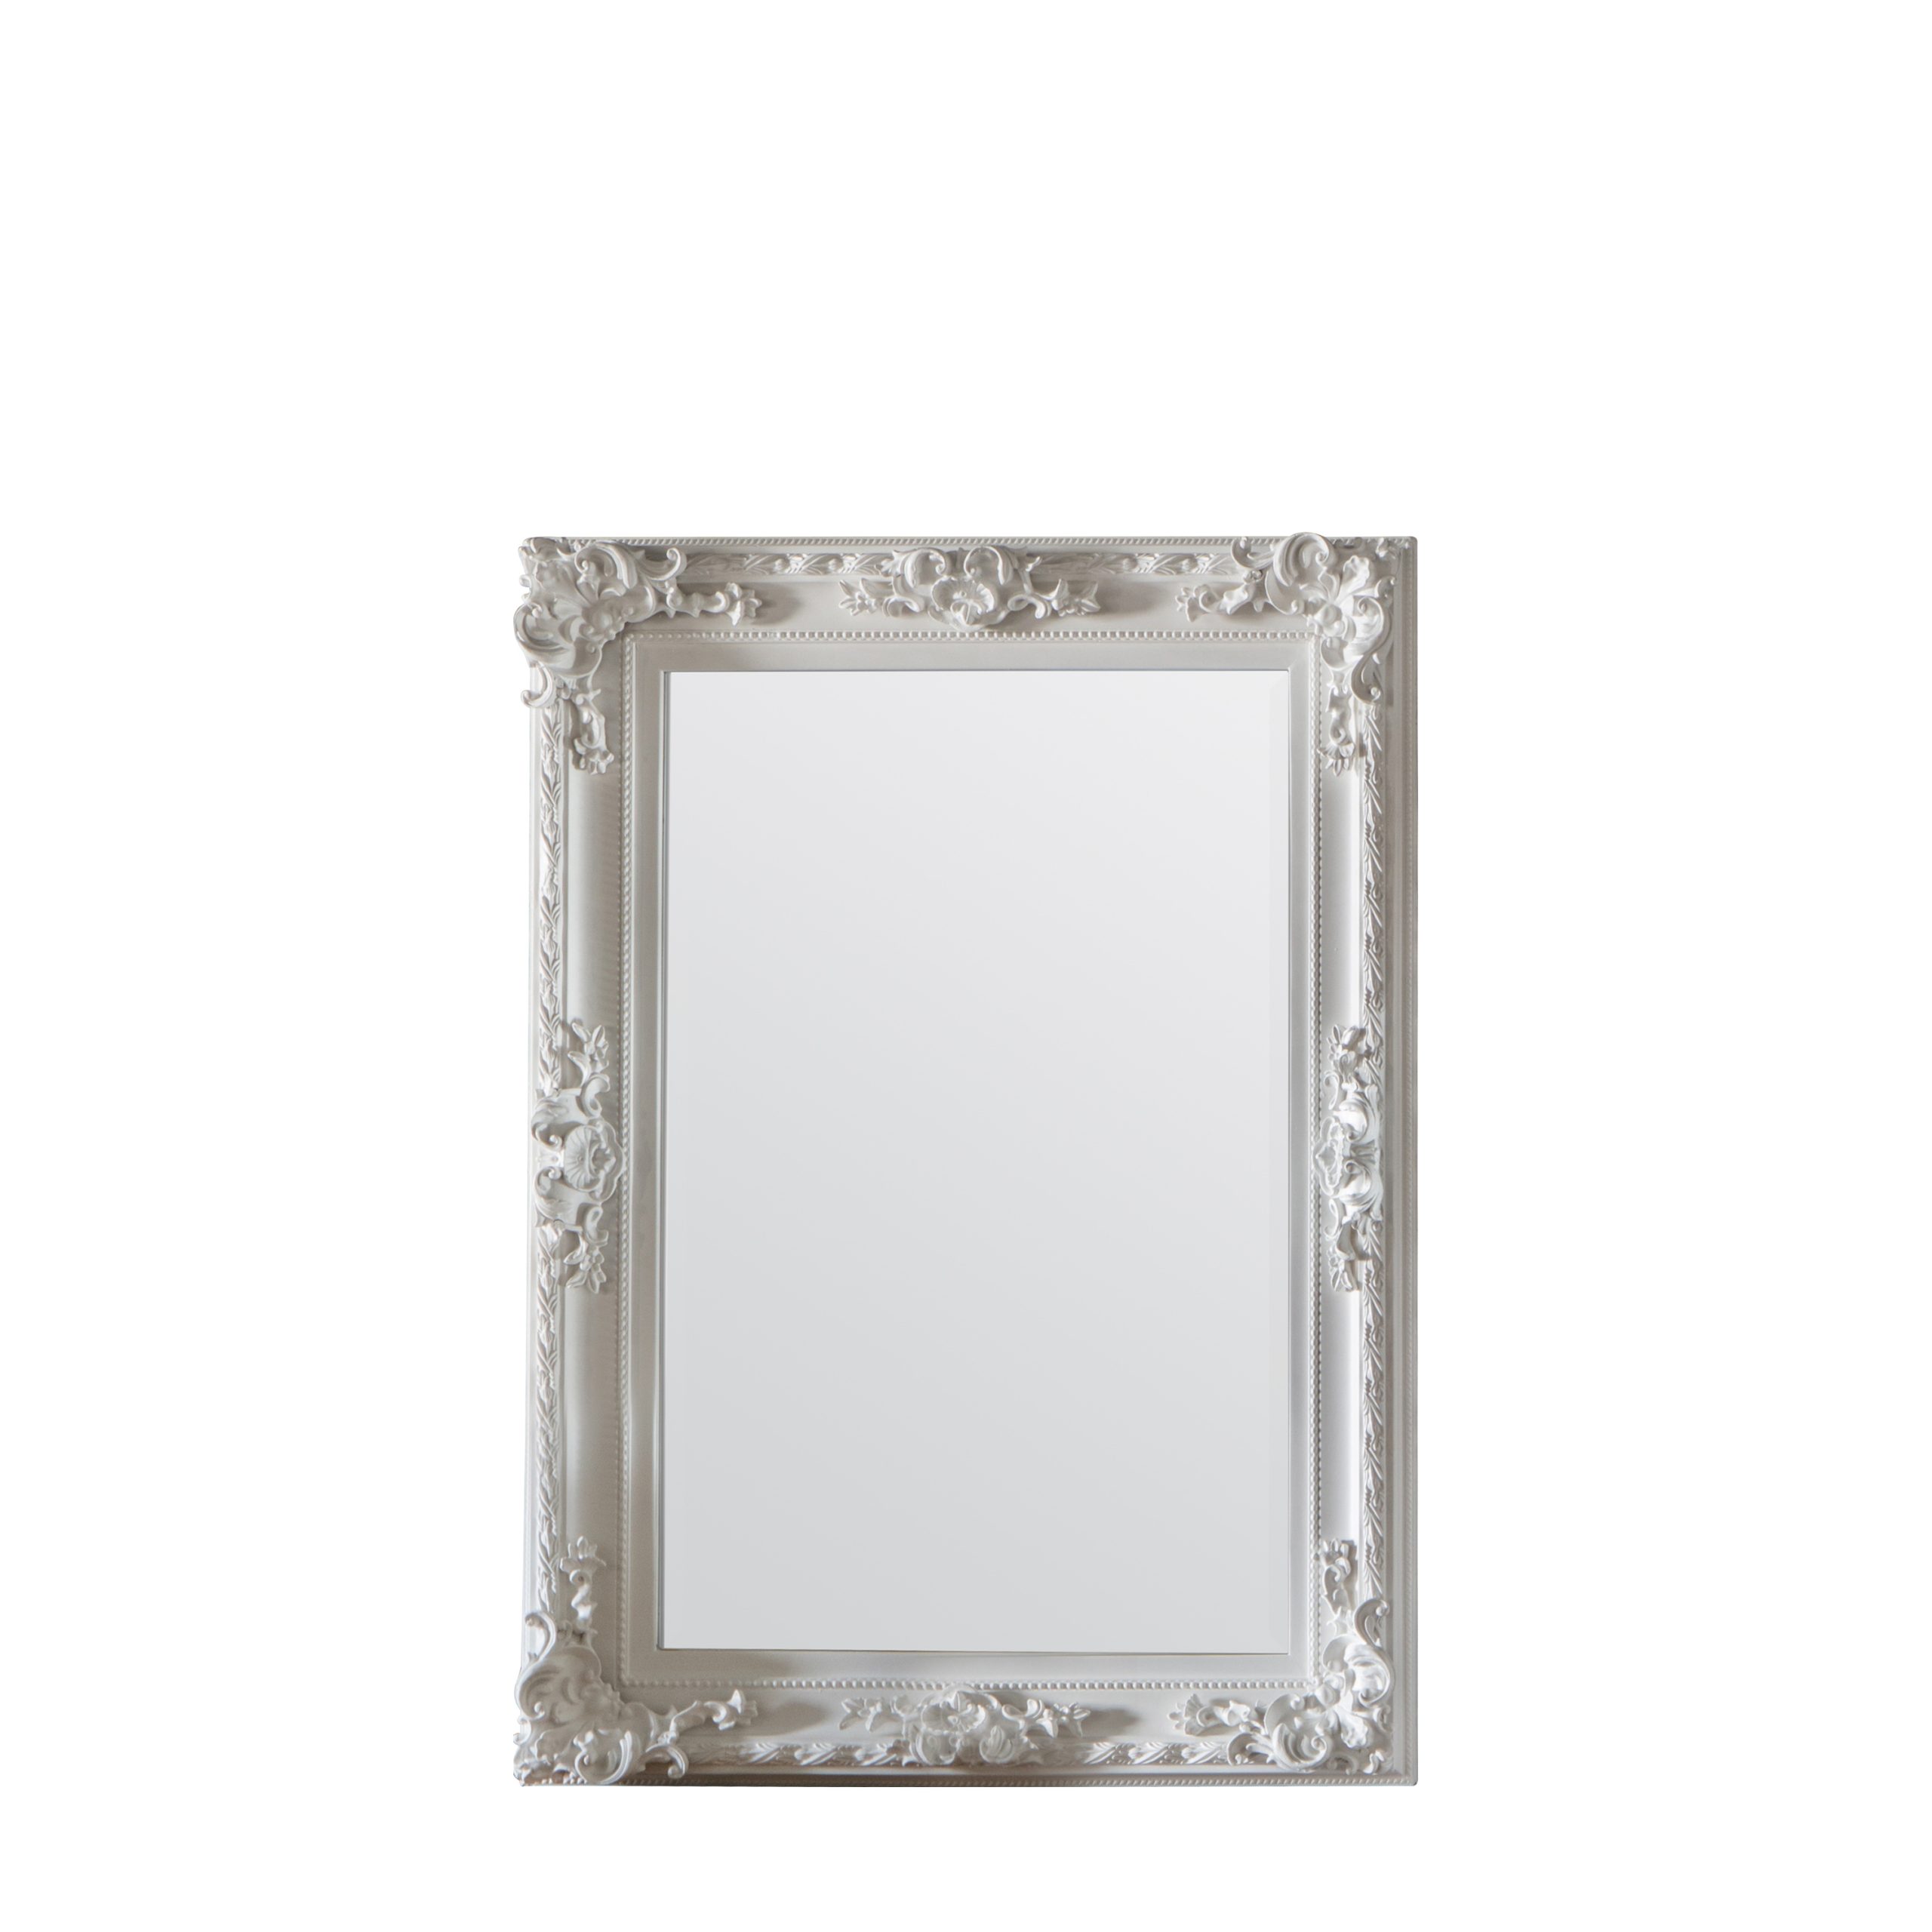 Gallery Direct Altori Rectangle Mirror White